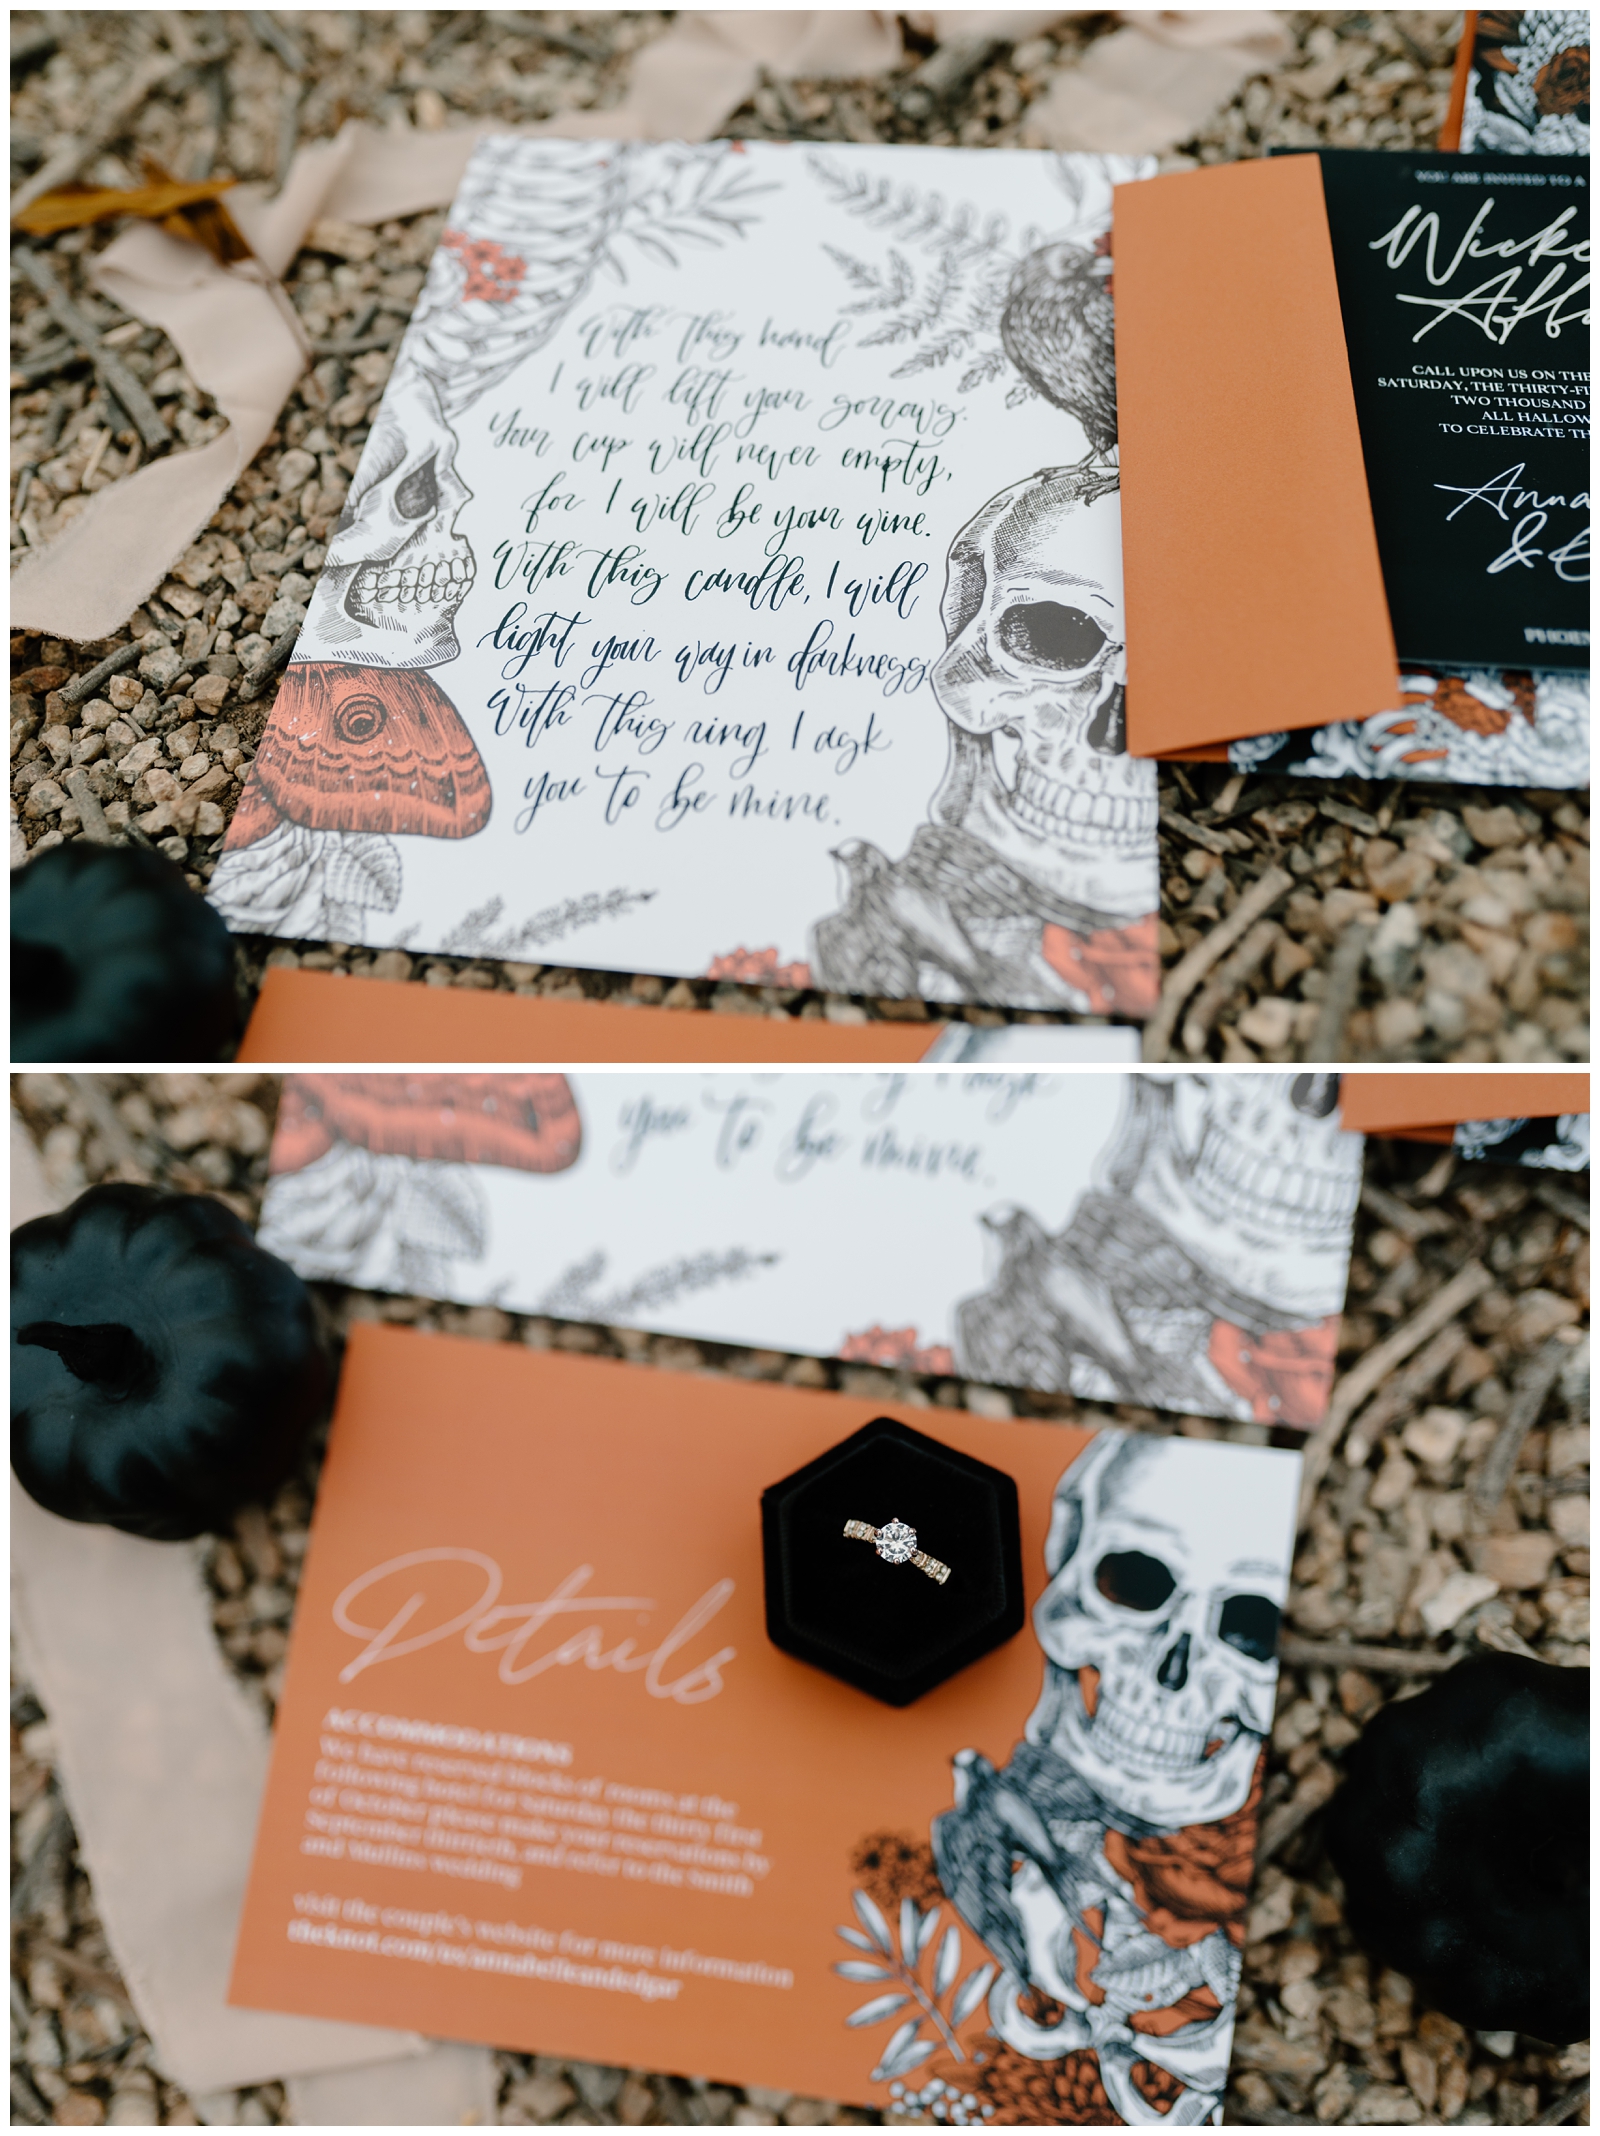 Cool and spooky wedding details for Phoenix Halloween elopement in Arizona